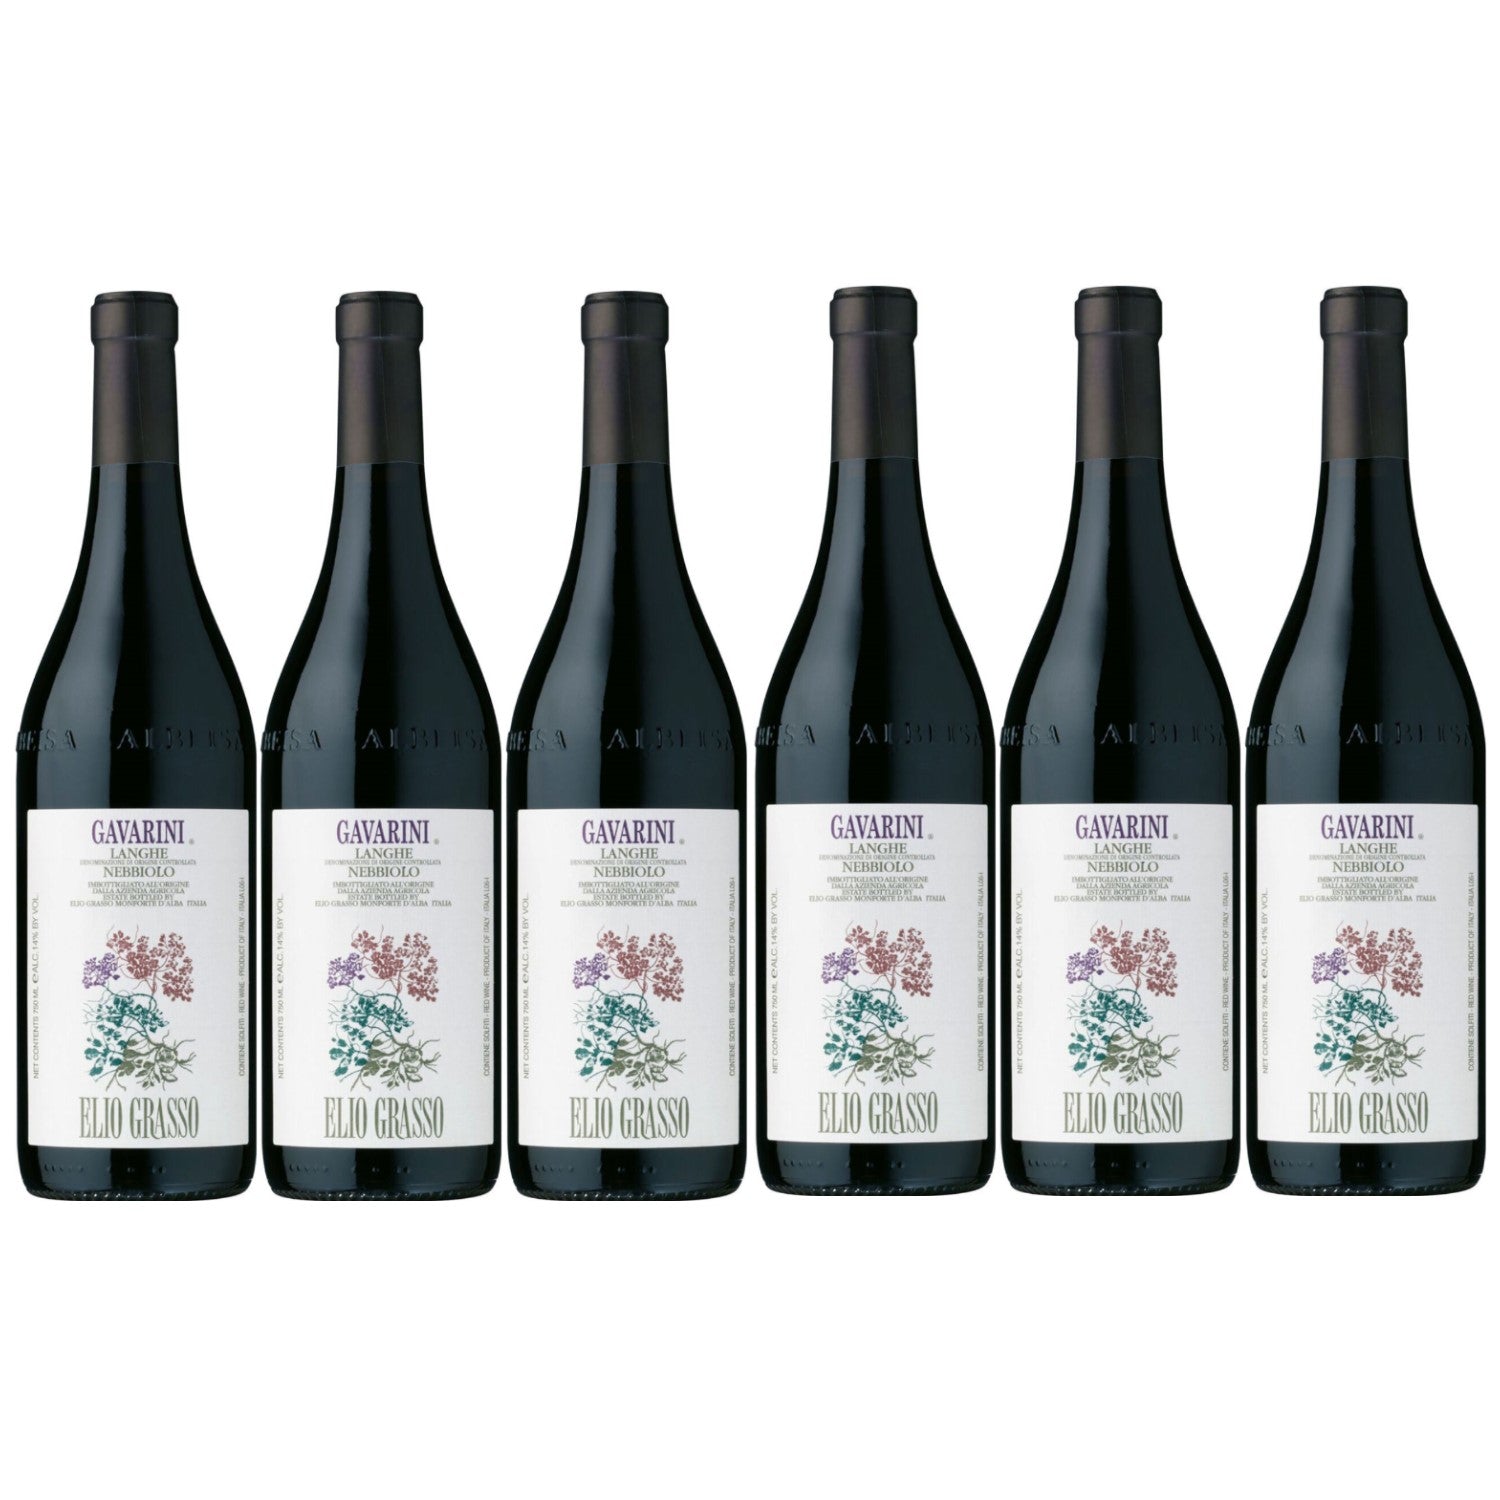 Elio Grasso Gavarini Langhe Nebbiolo Rotwein Wein trocken DOC Italien (6 x 0.75l) - Versanel -